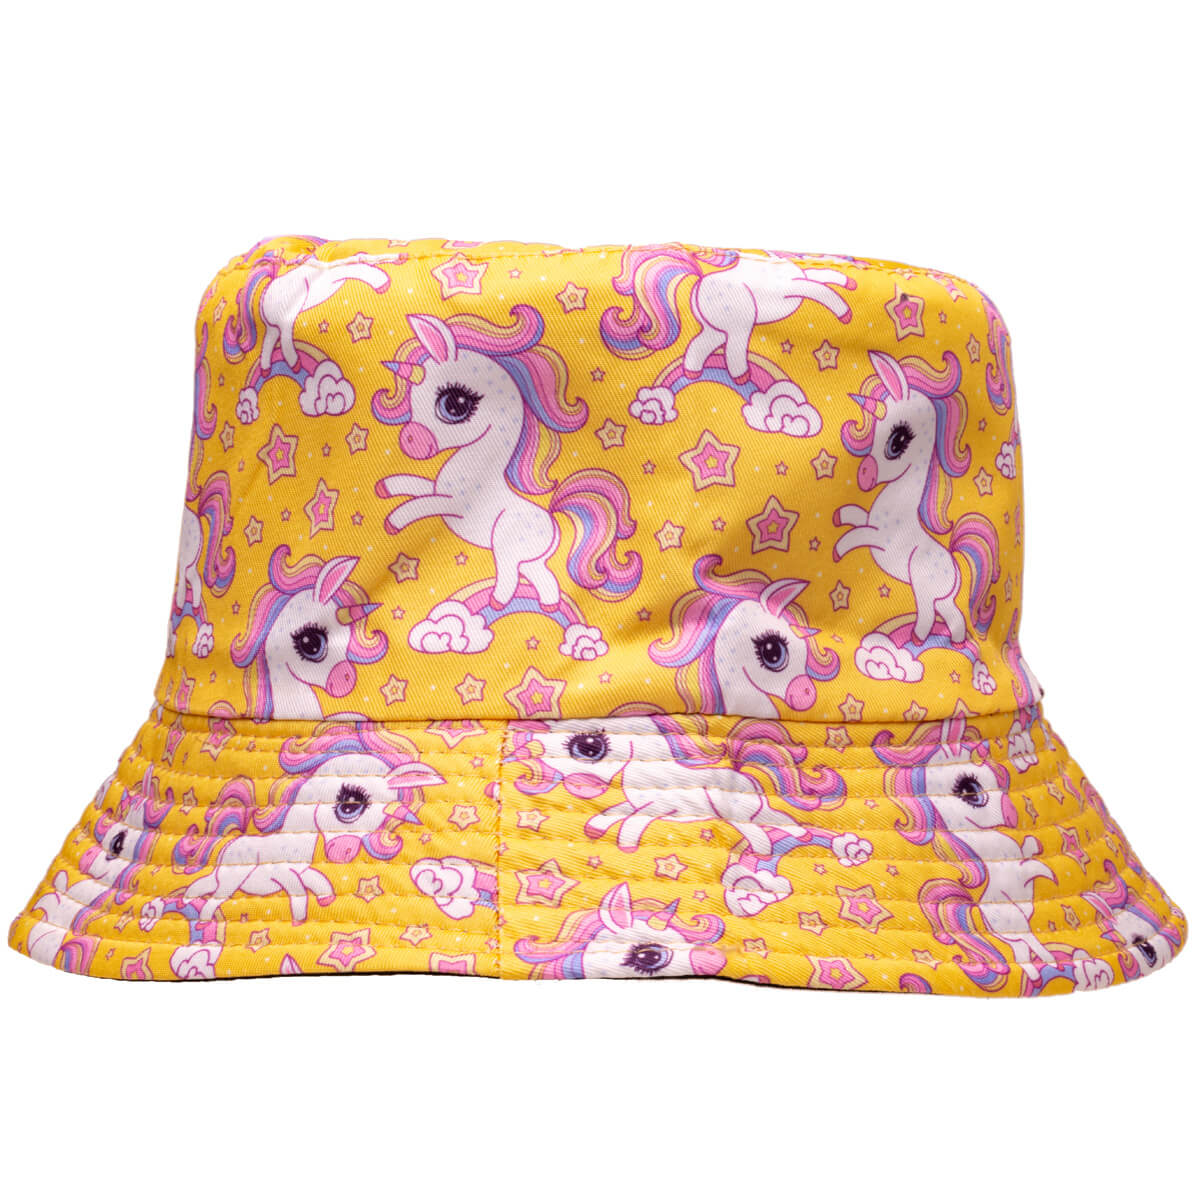 Unicorn children's fishing hat reversible